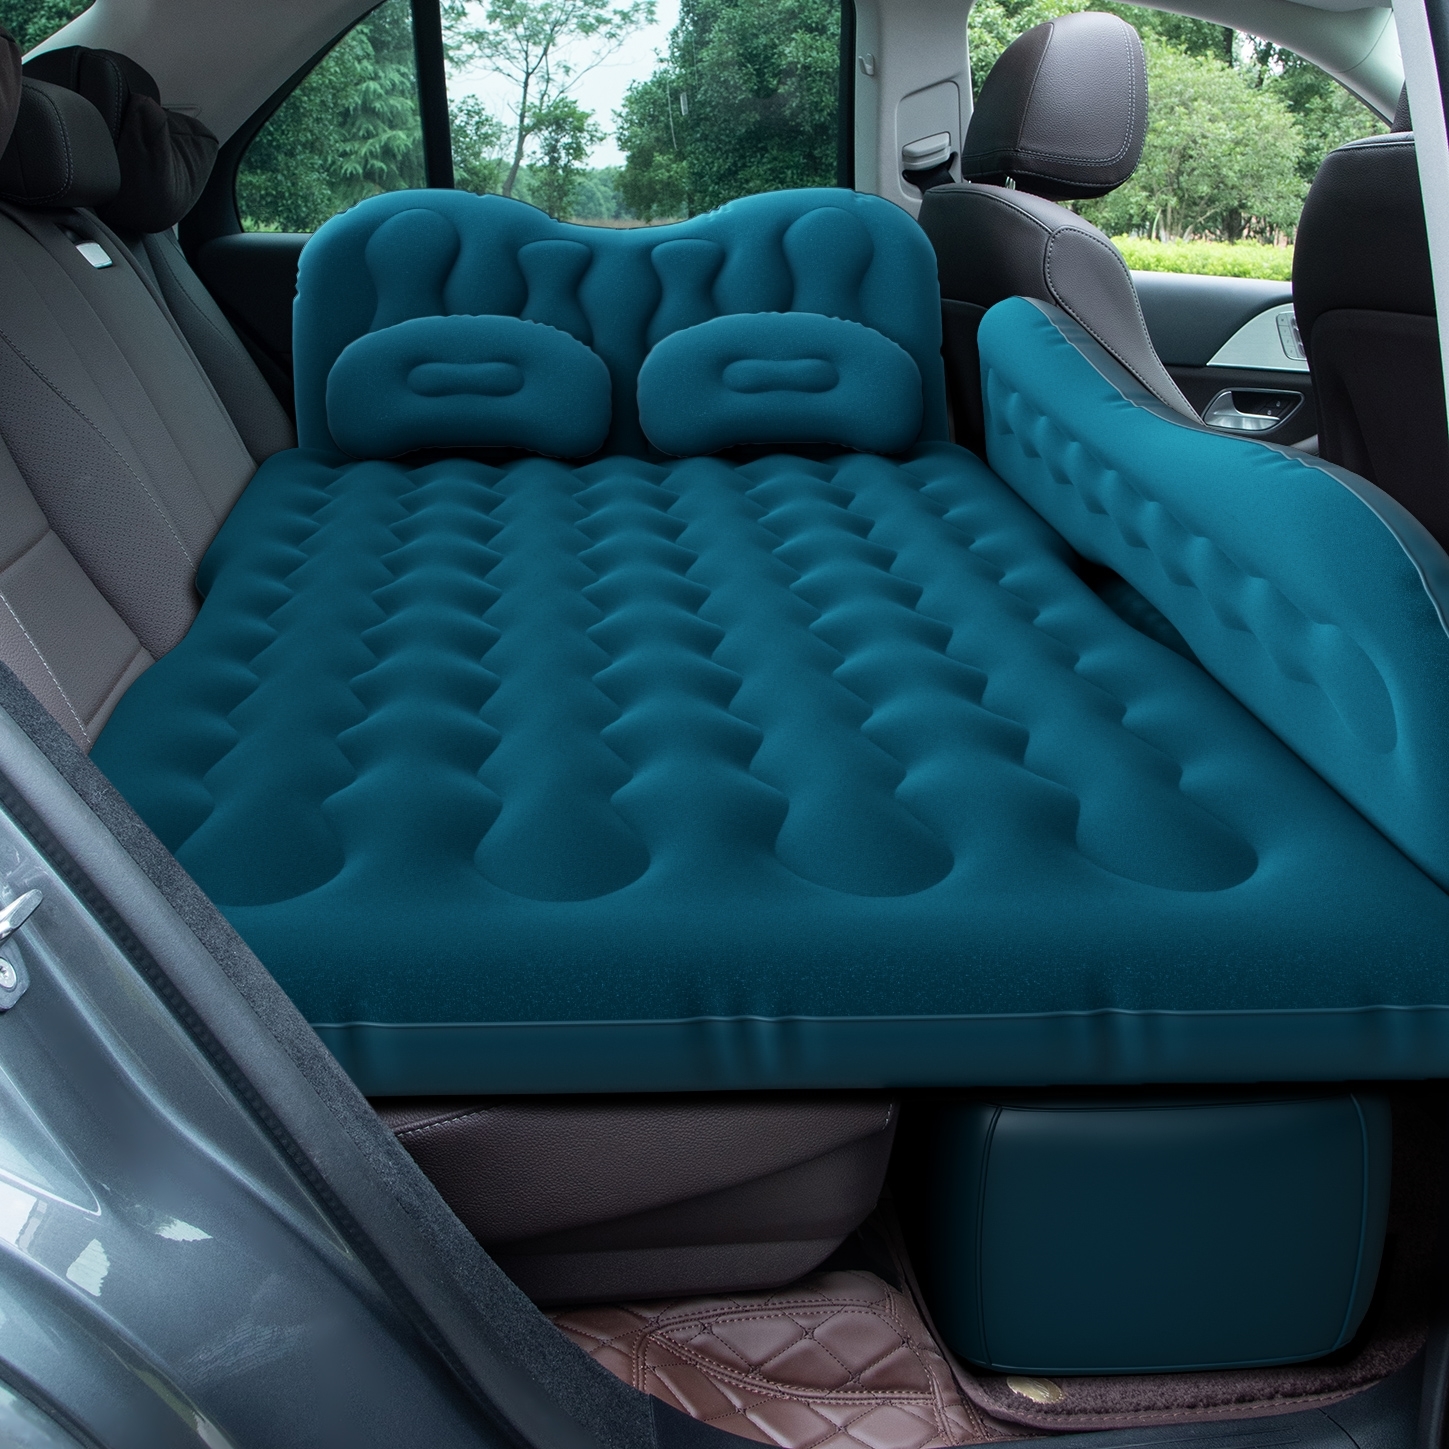 大众揽境7座七坐车载自动充气床SUV露营旅行床车后备箱专用气垫床